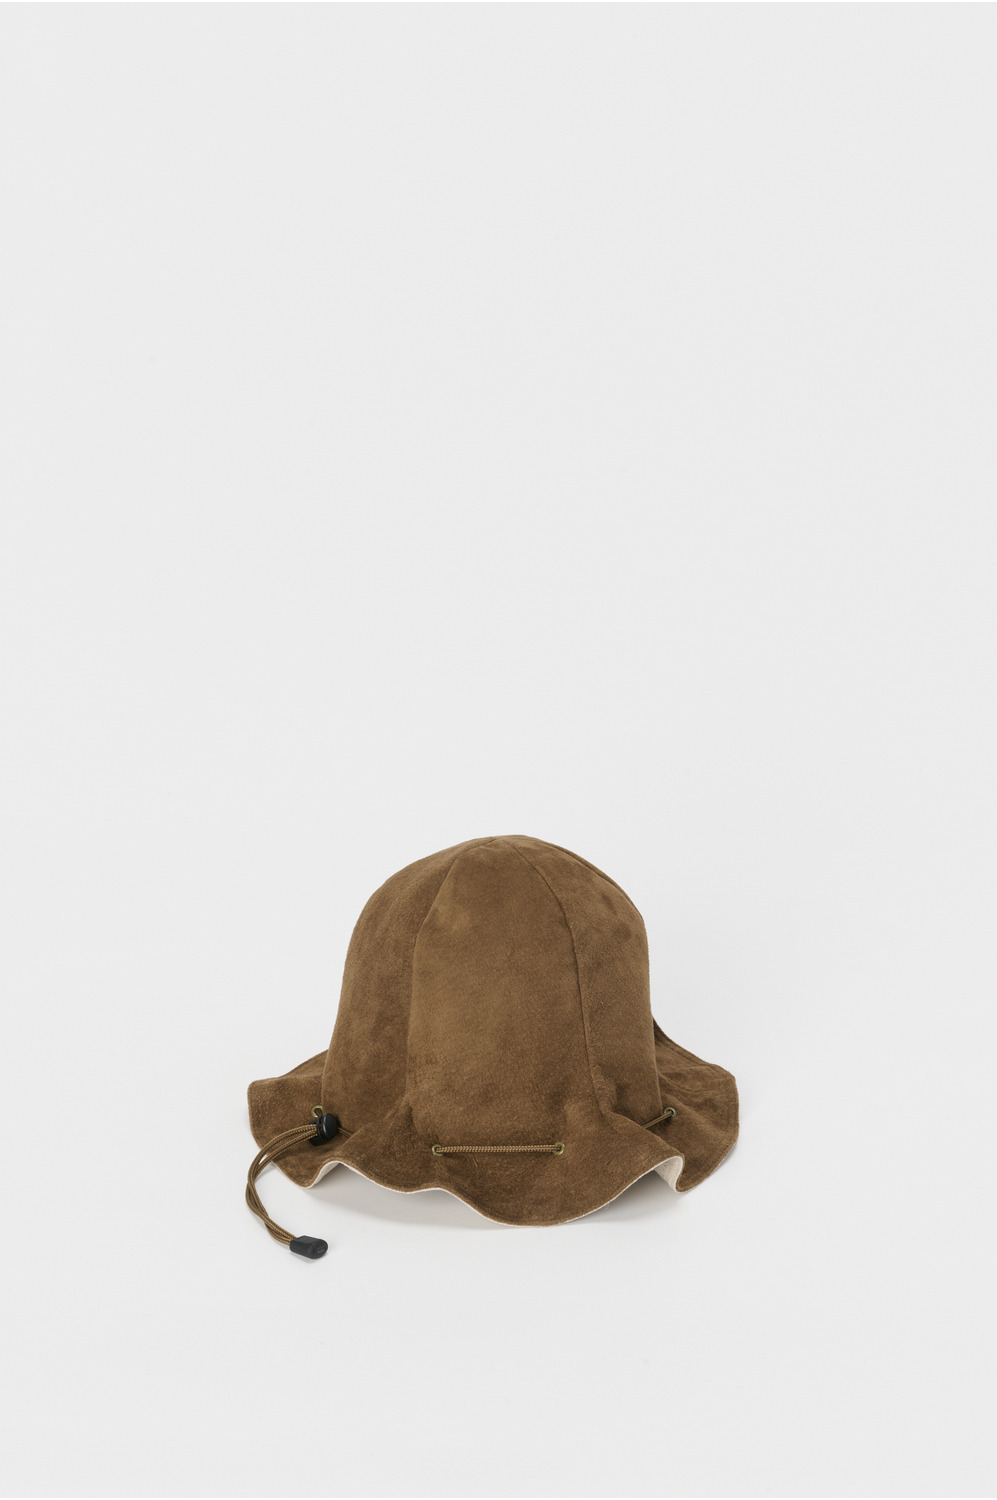 pig kinchaku hat 詳細画像 khaki brown 1